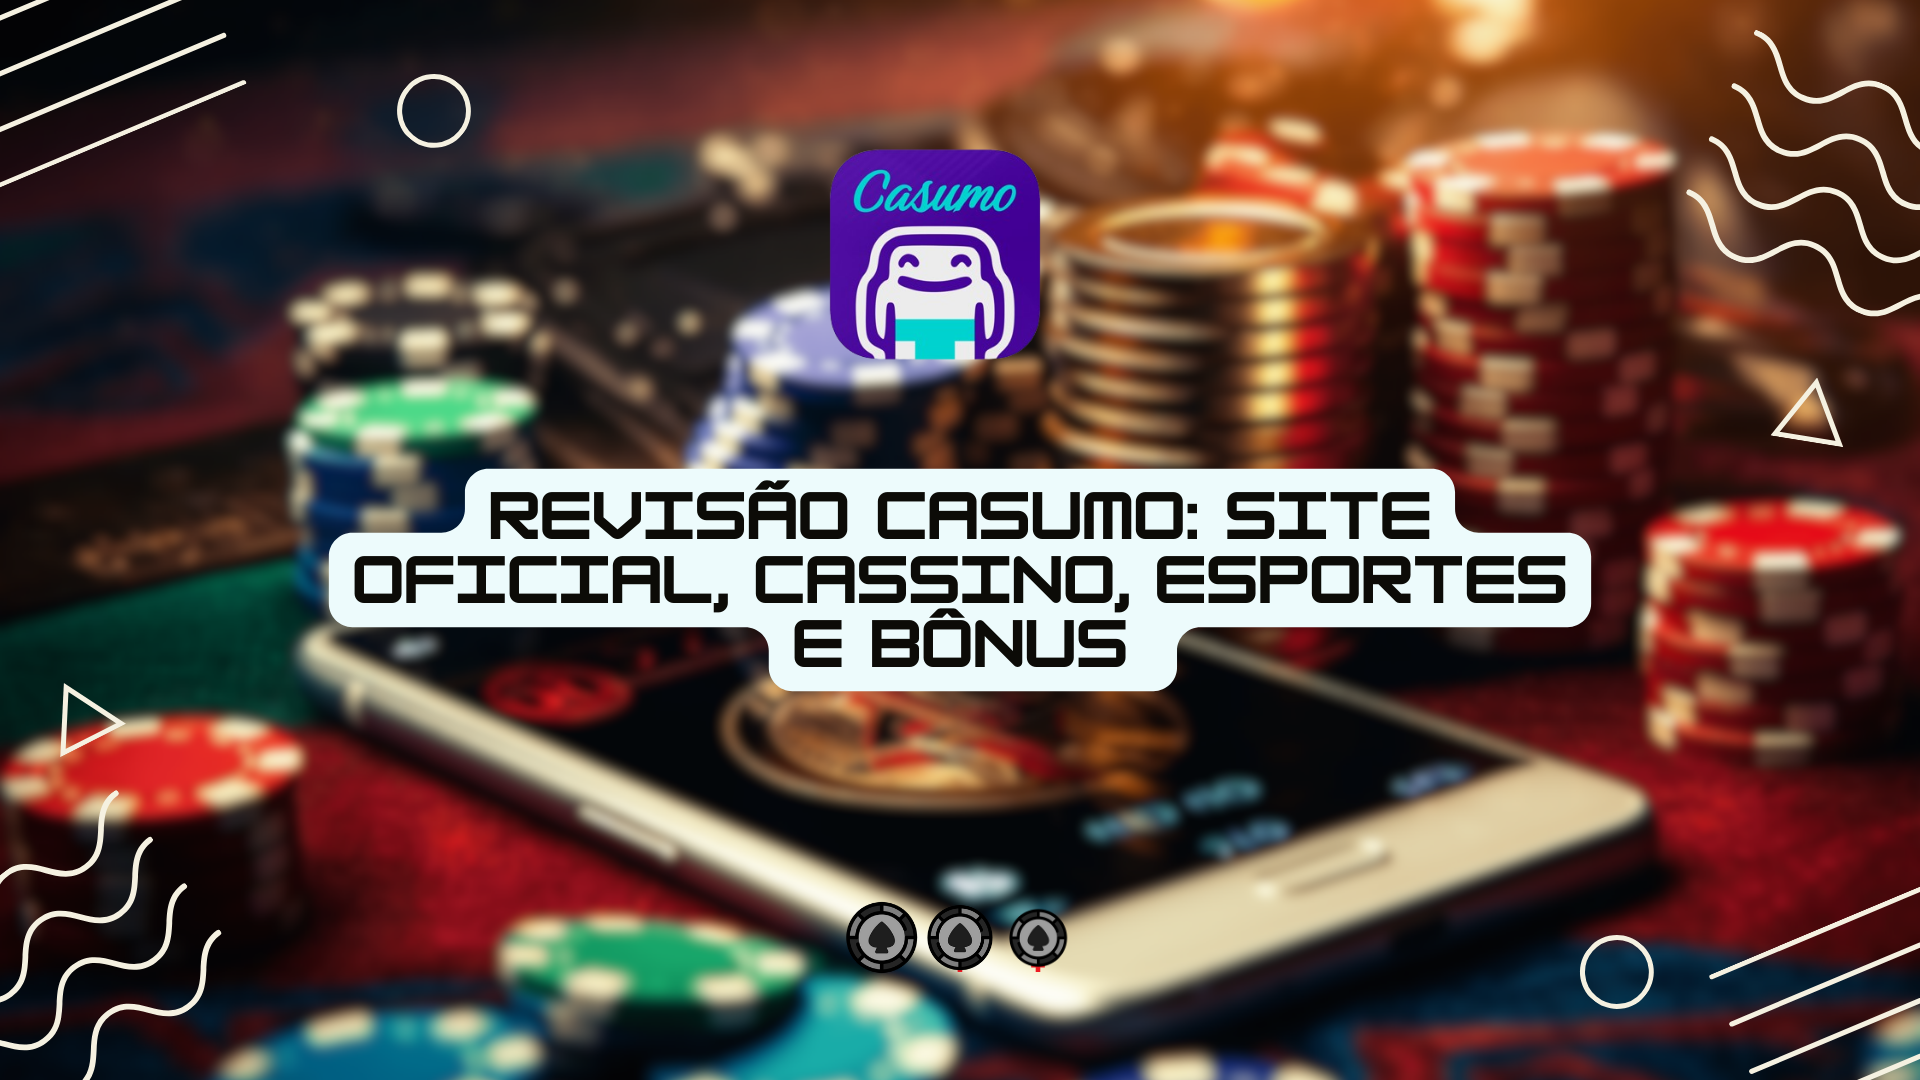 Revisão Casumo: site oficial, cassino, esportes e bônus 